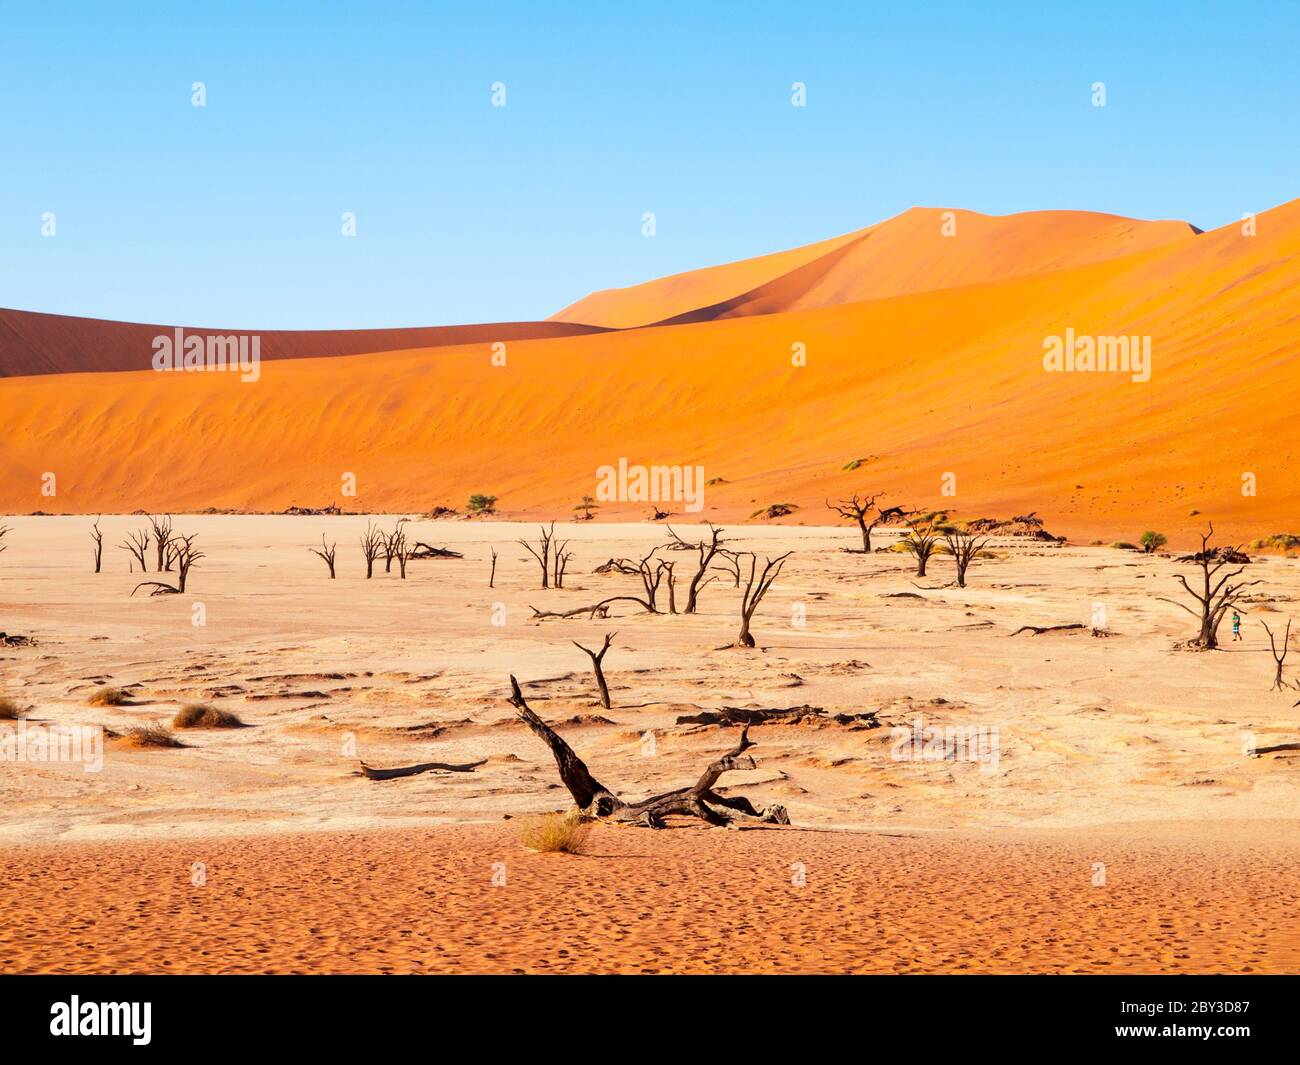 Ornes de chameaux morts dans la poêle sèche Deadvlei au milieu des dunes rouges du désert du Namib, près de Sossusvlei, parc national Namib-Naukluft, Namibie, Afrique. Banque D'Images